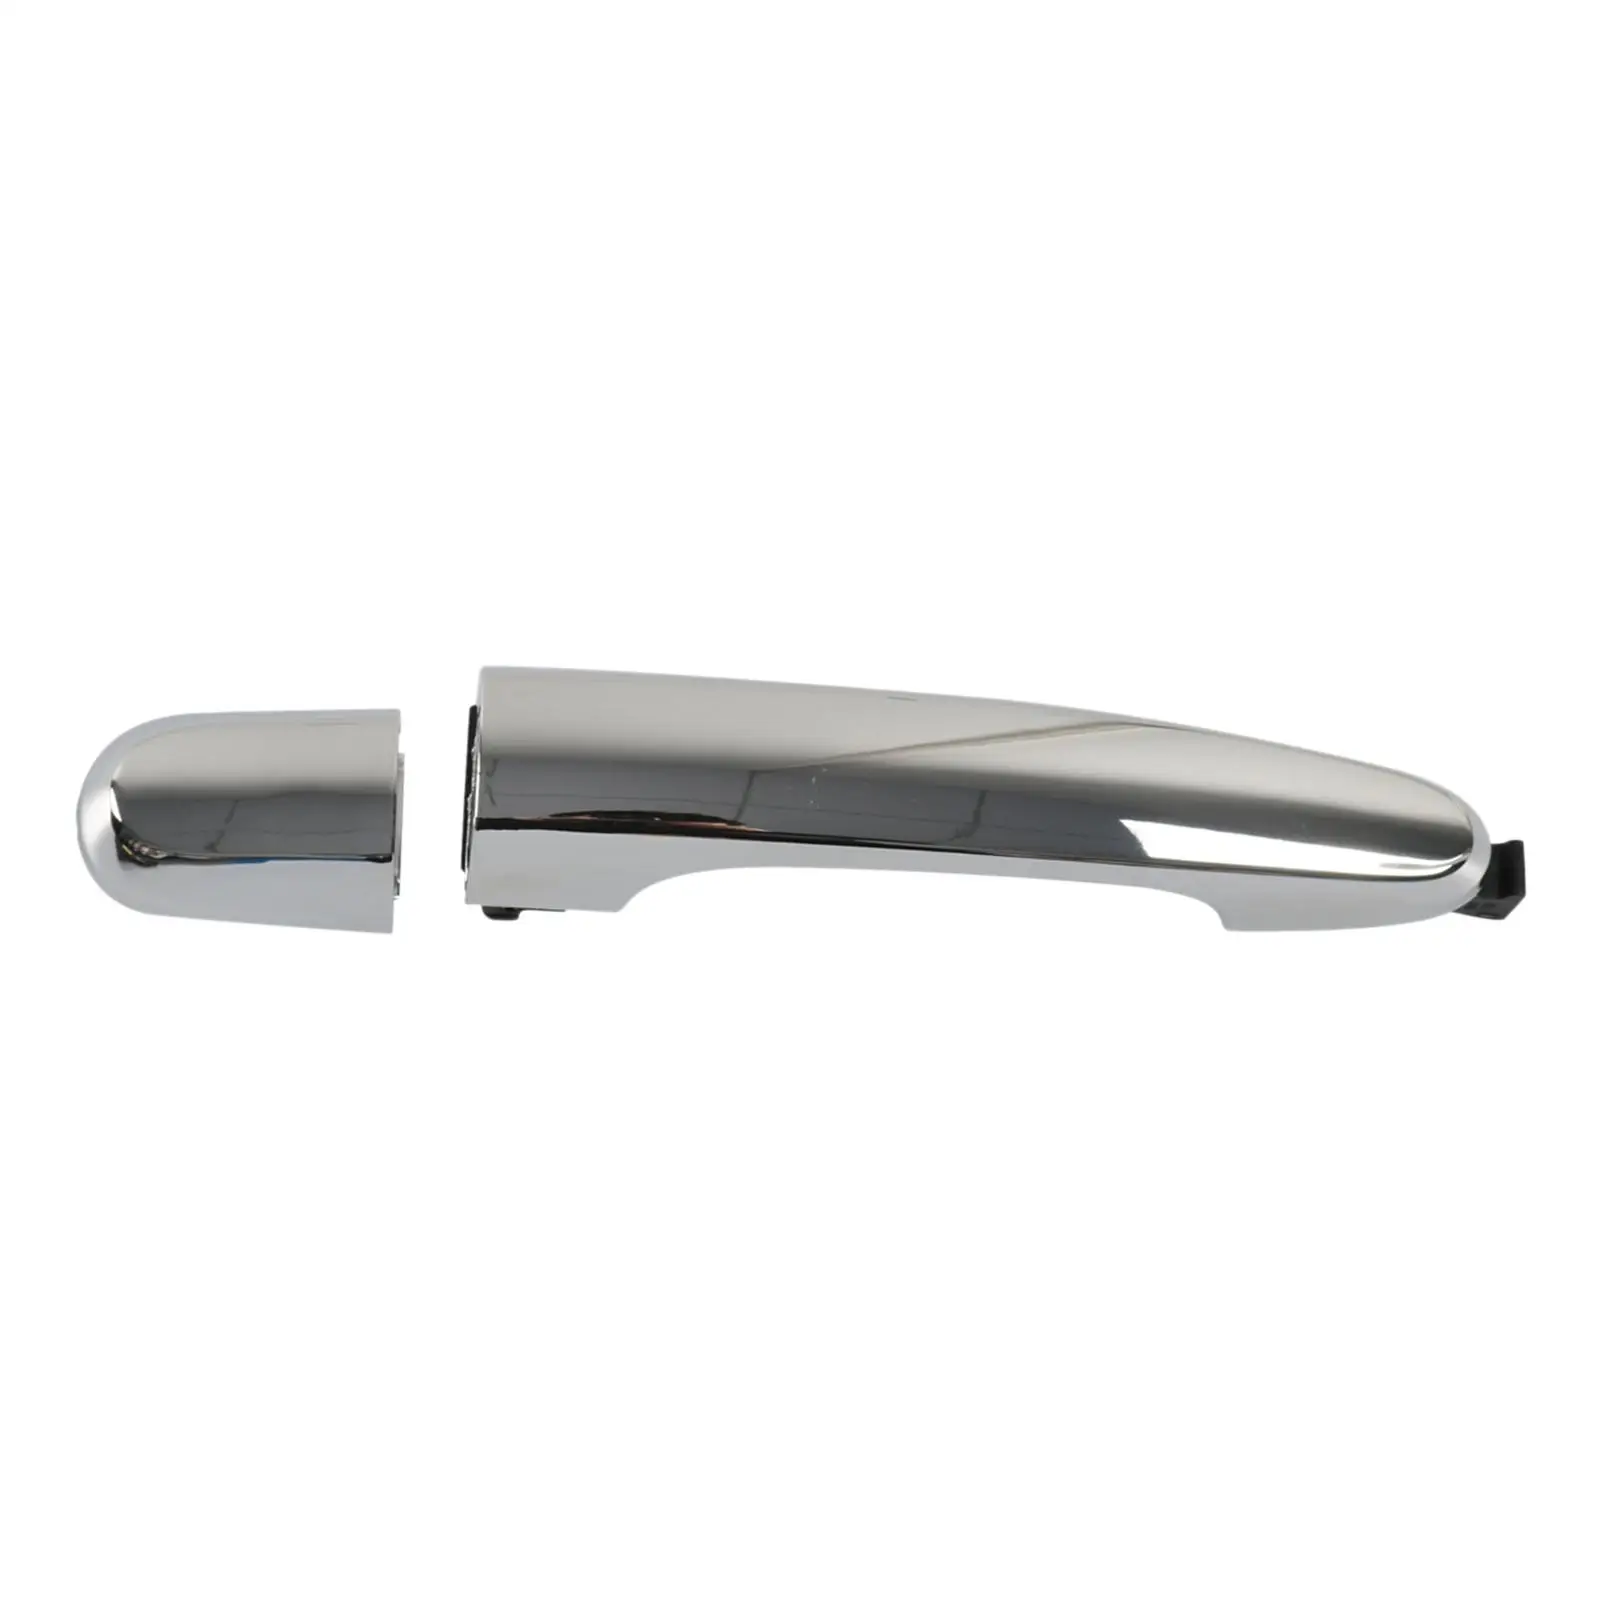 

Задняя правая наружная дверная ручка 82651-2P010 для Sorento, легко установить, премиум